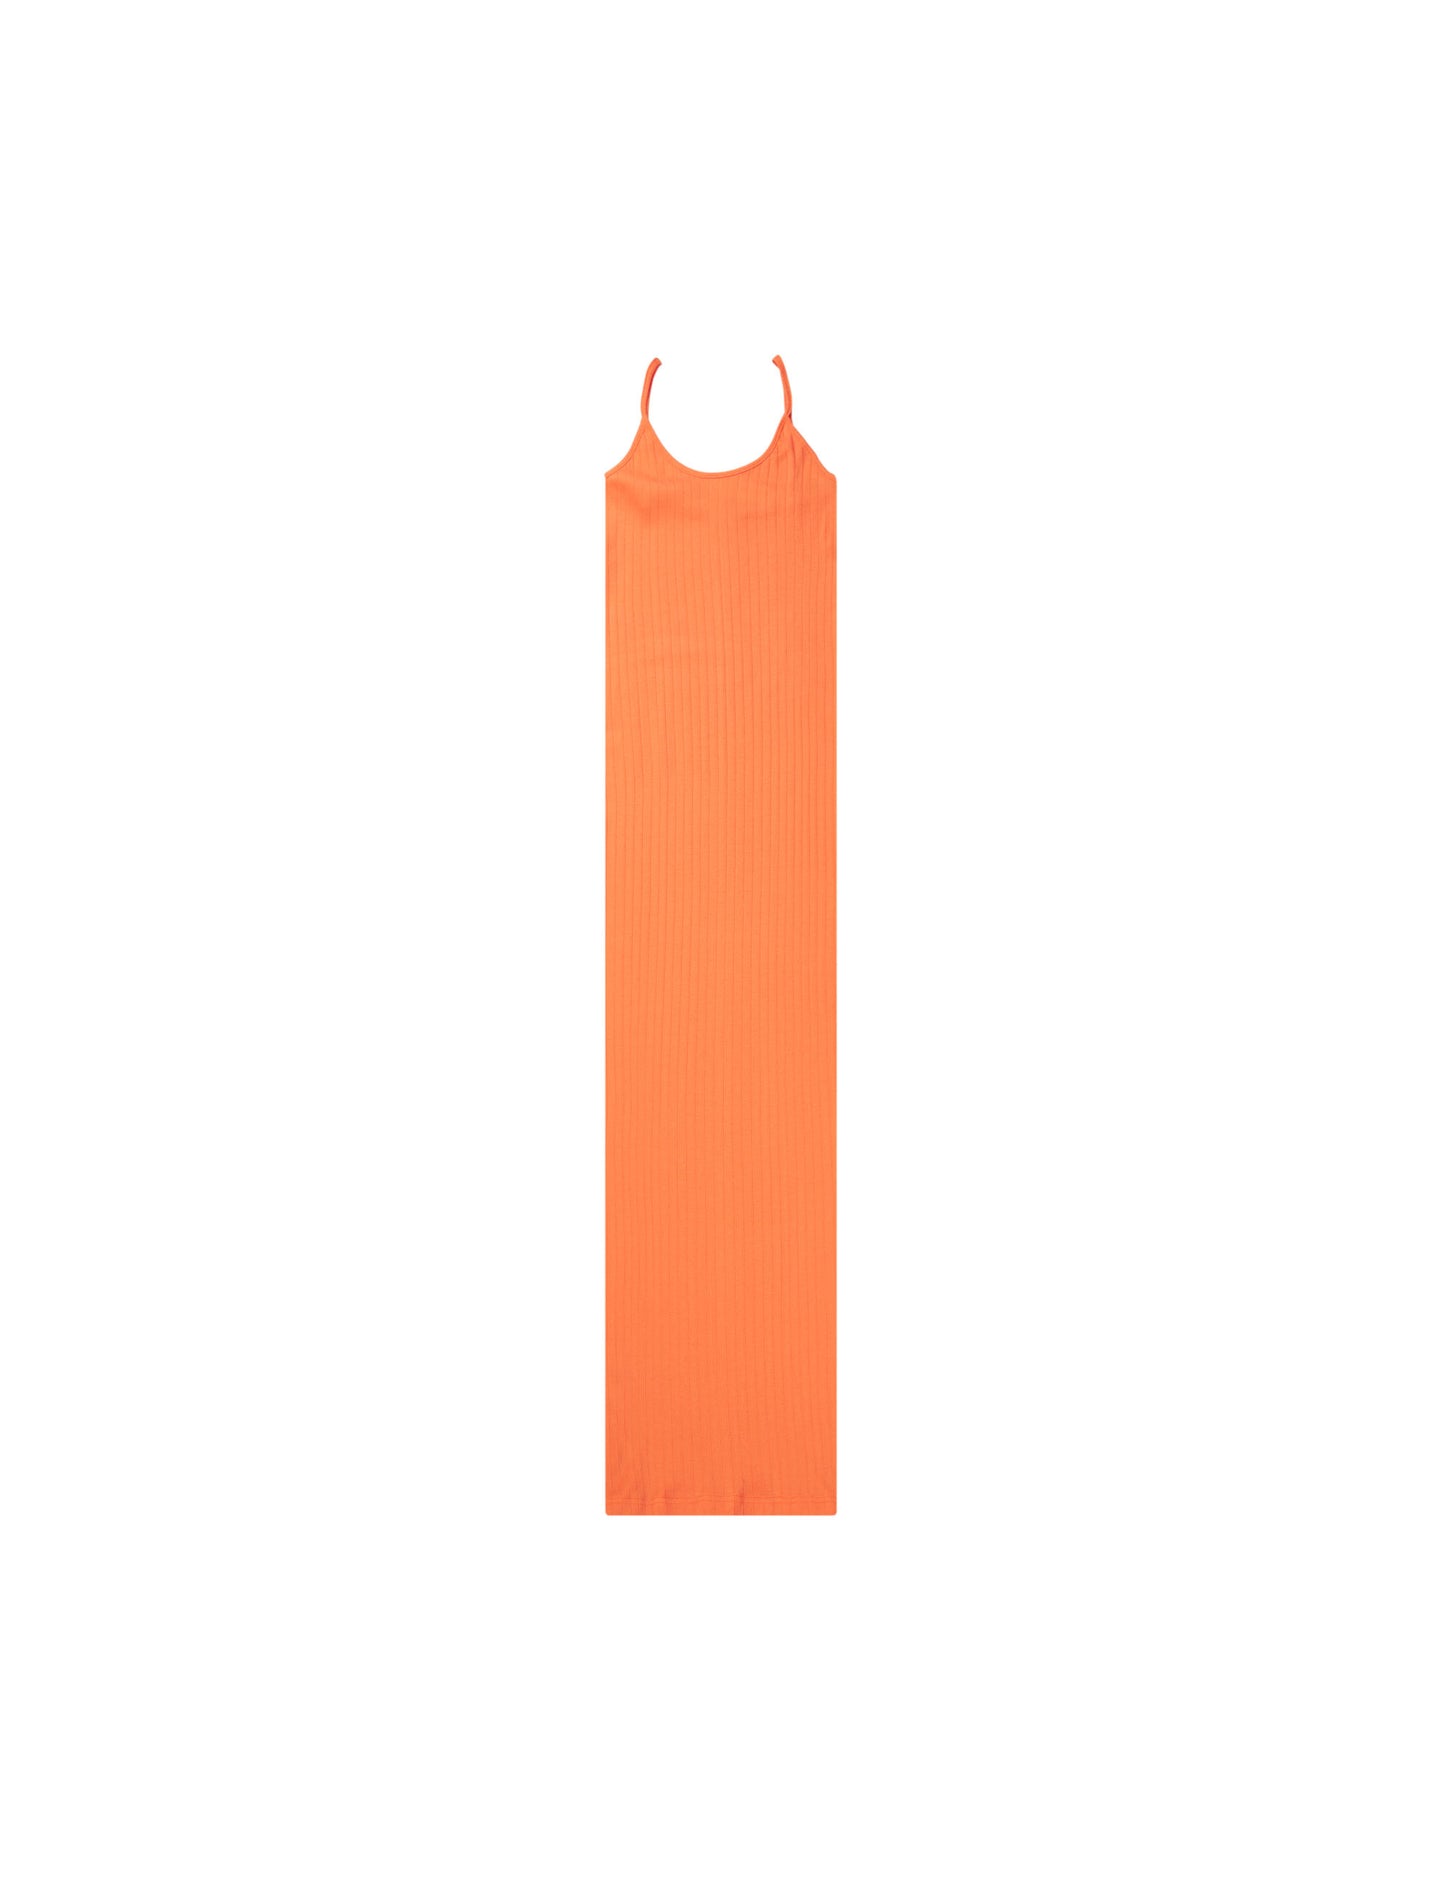 NPS Strap Dress Solid Colour, Orange